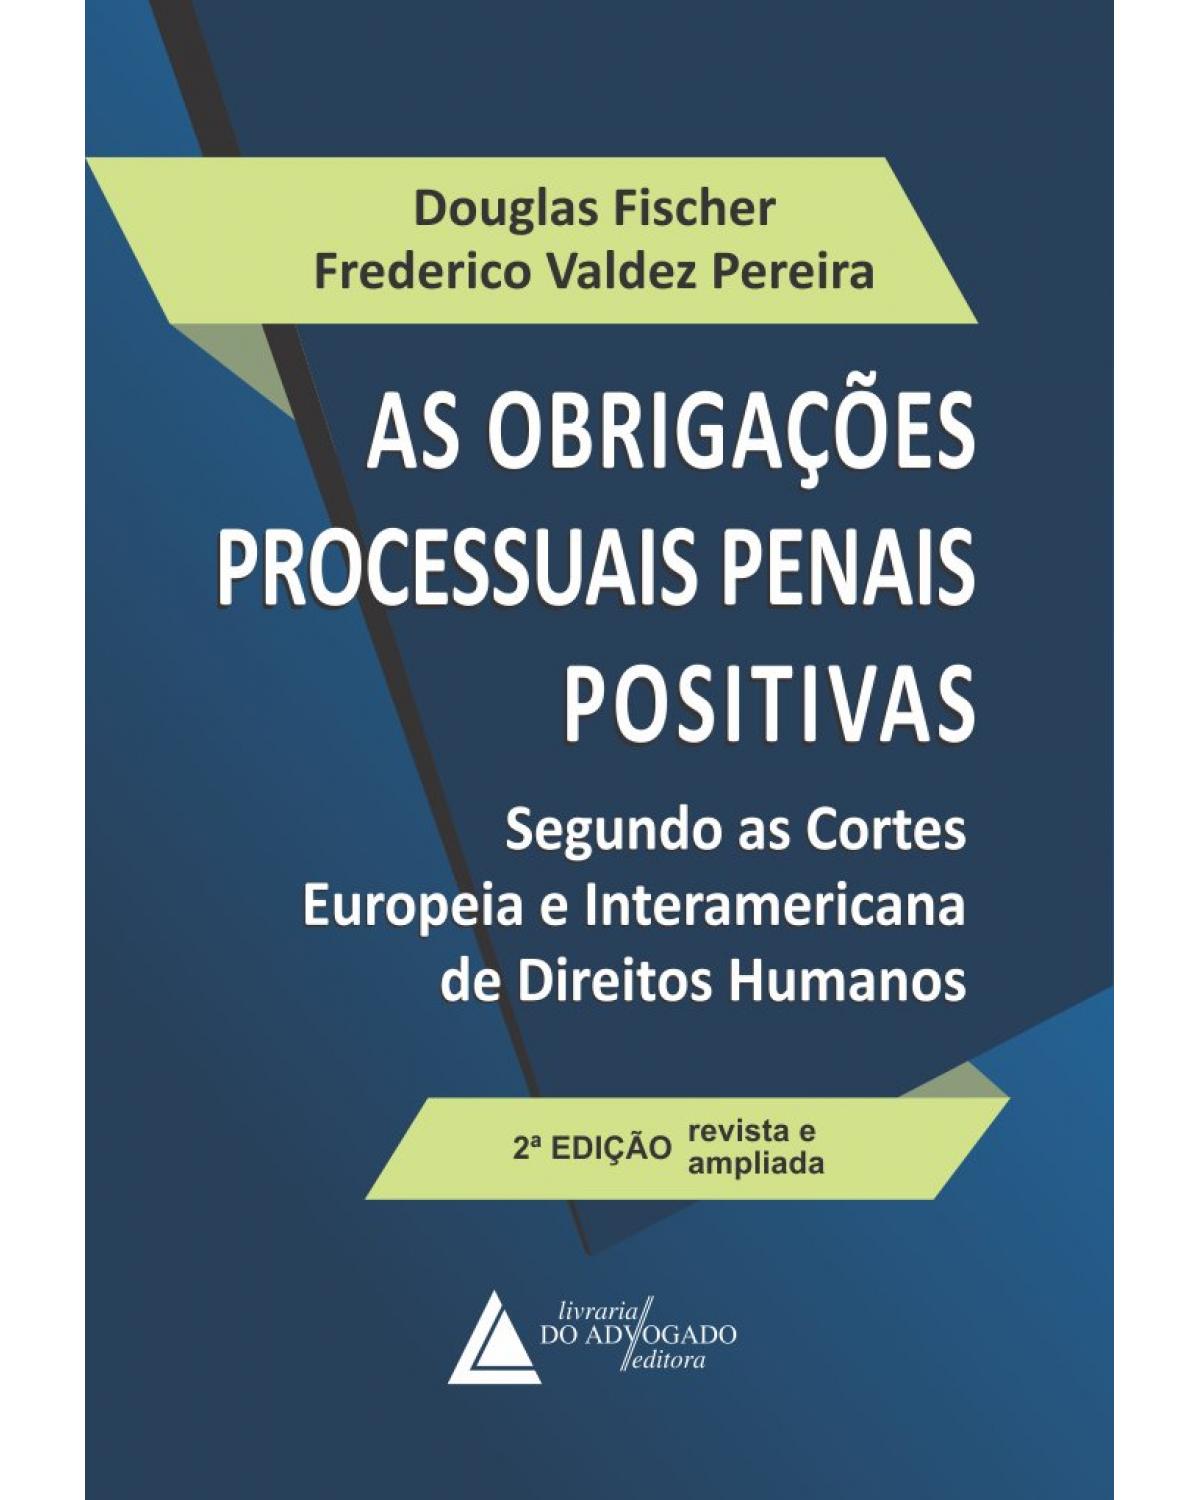 As obrigações processuais penais positivas: segundo as Cortes Europeia e Interamericana de direitos humanos - 2ª Edição | 2019